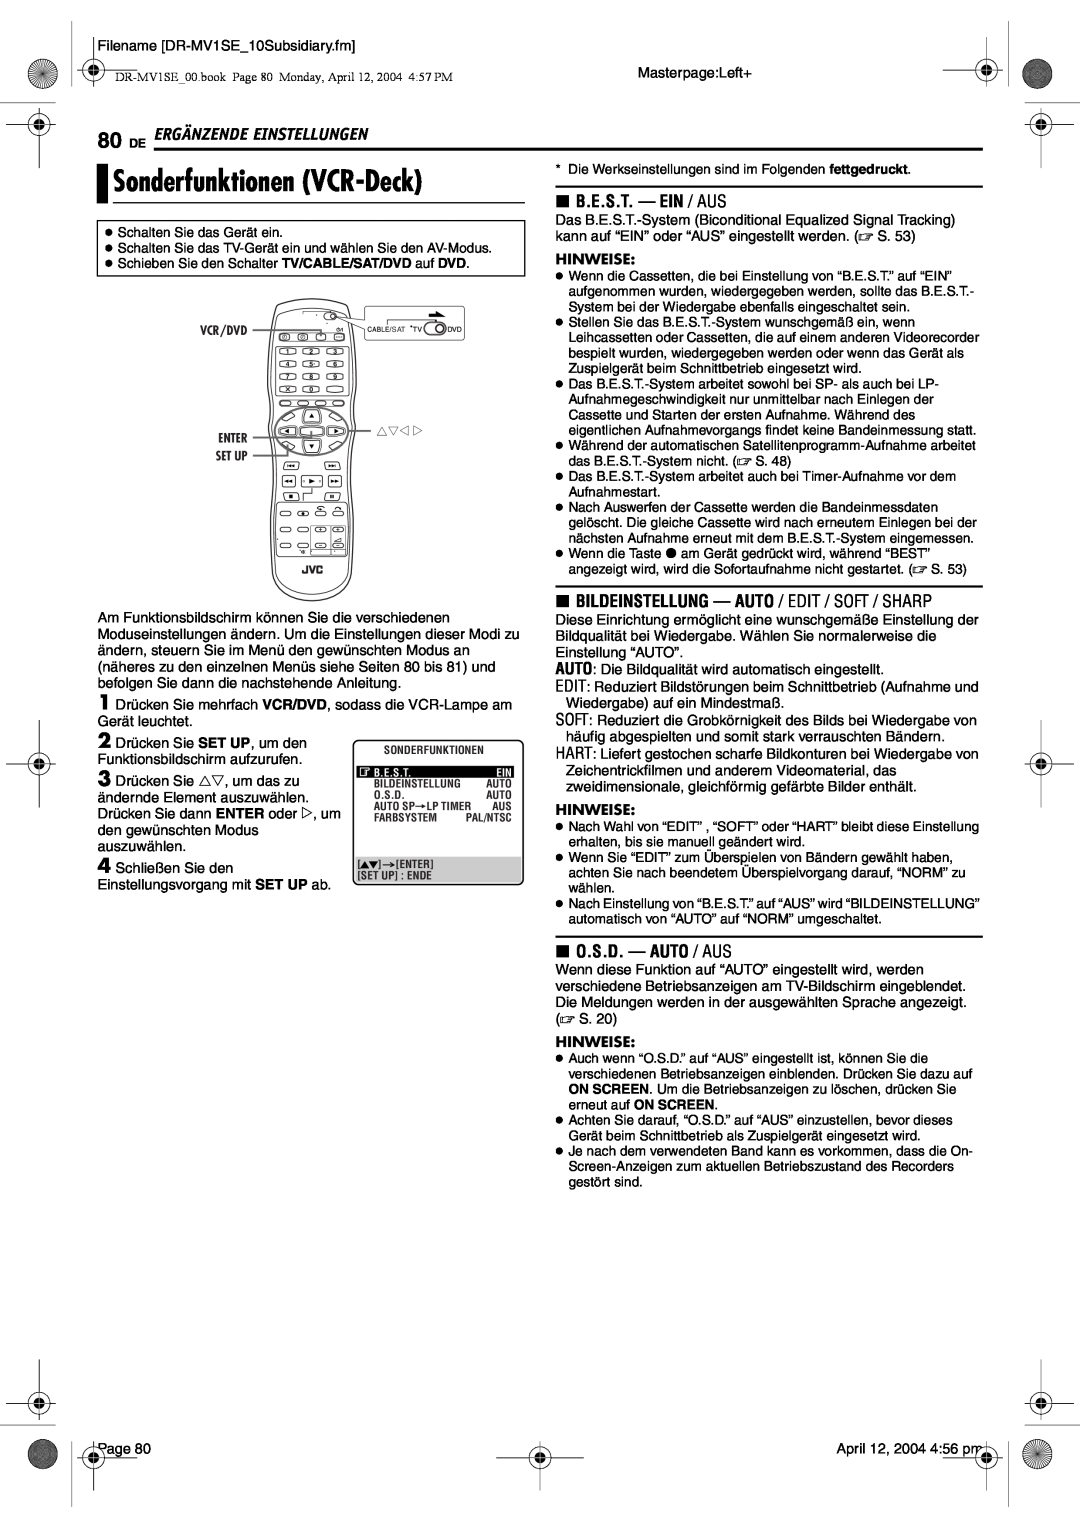 JVC DR-MV1S manual Sonderfunktionen VCR-Deck, De Ergänzende Einstellungen, 8 B.E.S.T. - EIN / AUS, 8 O.S.D. - AUTO / AUS 